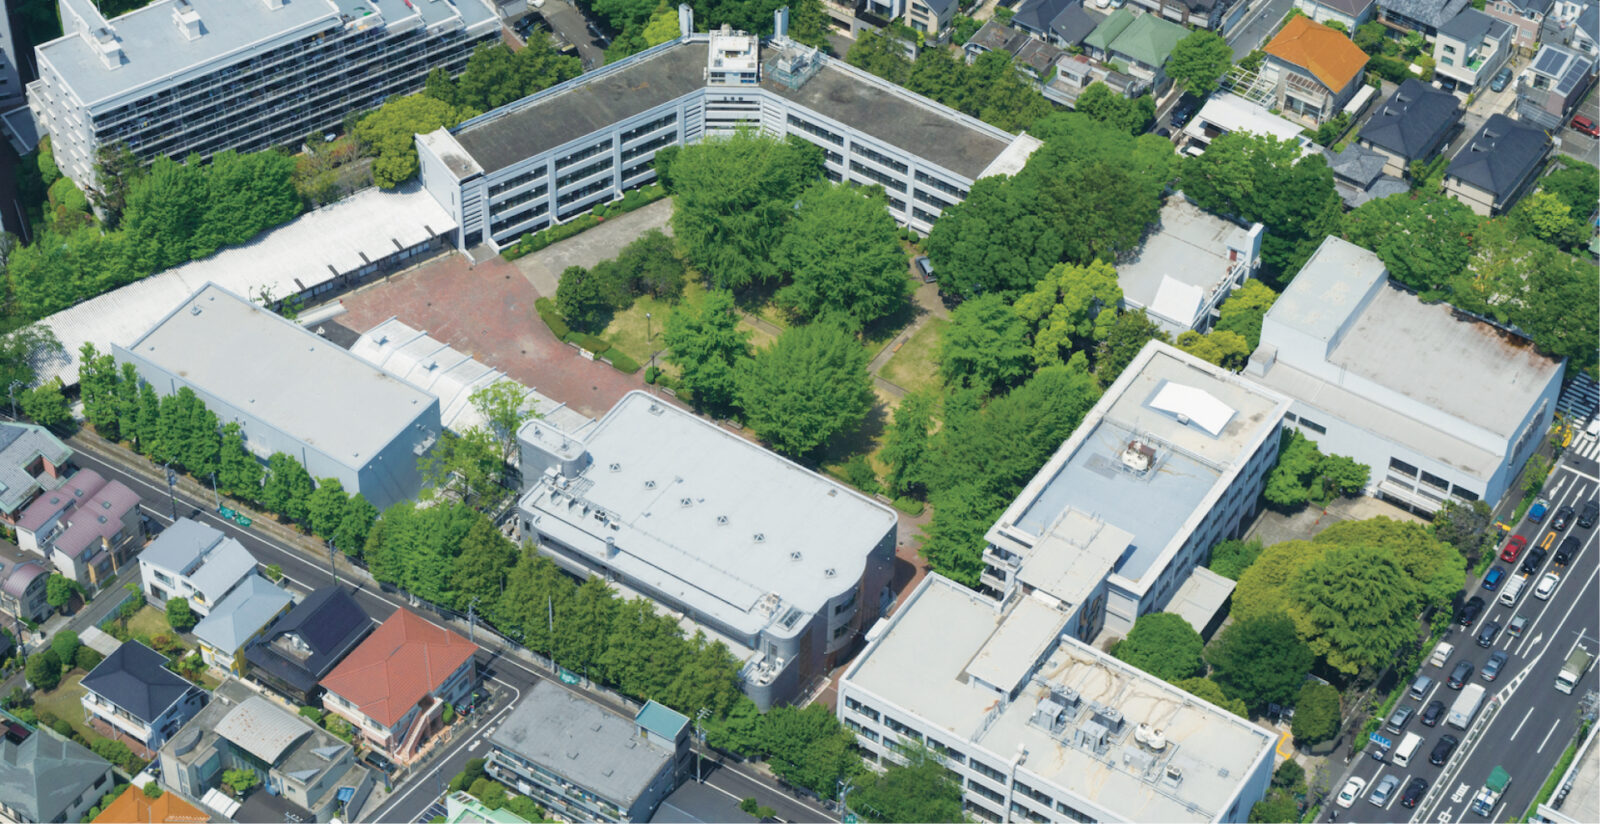 上空から撮影したキャンパスの写真。校舎や周辺の街なみ、キャンパス内の中に緑の木々が映る